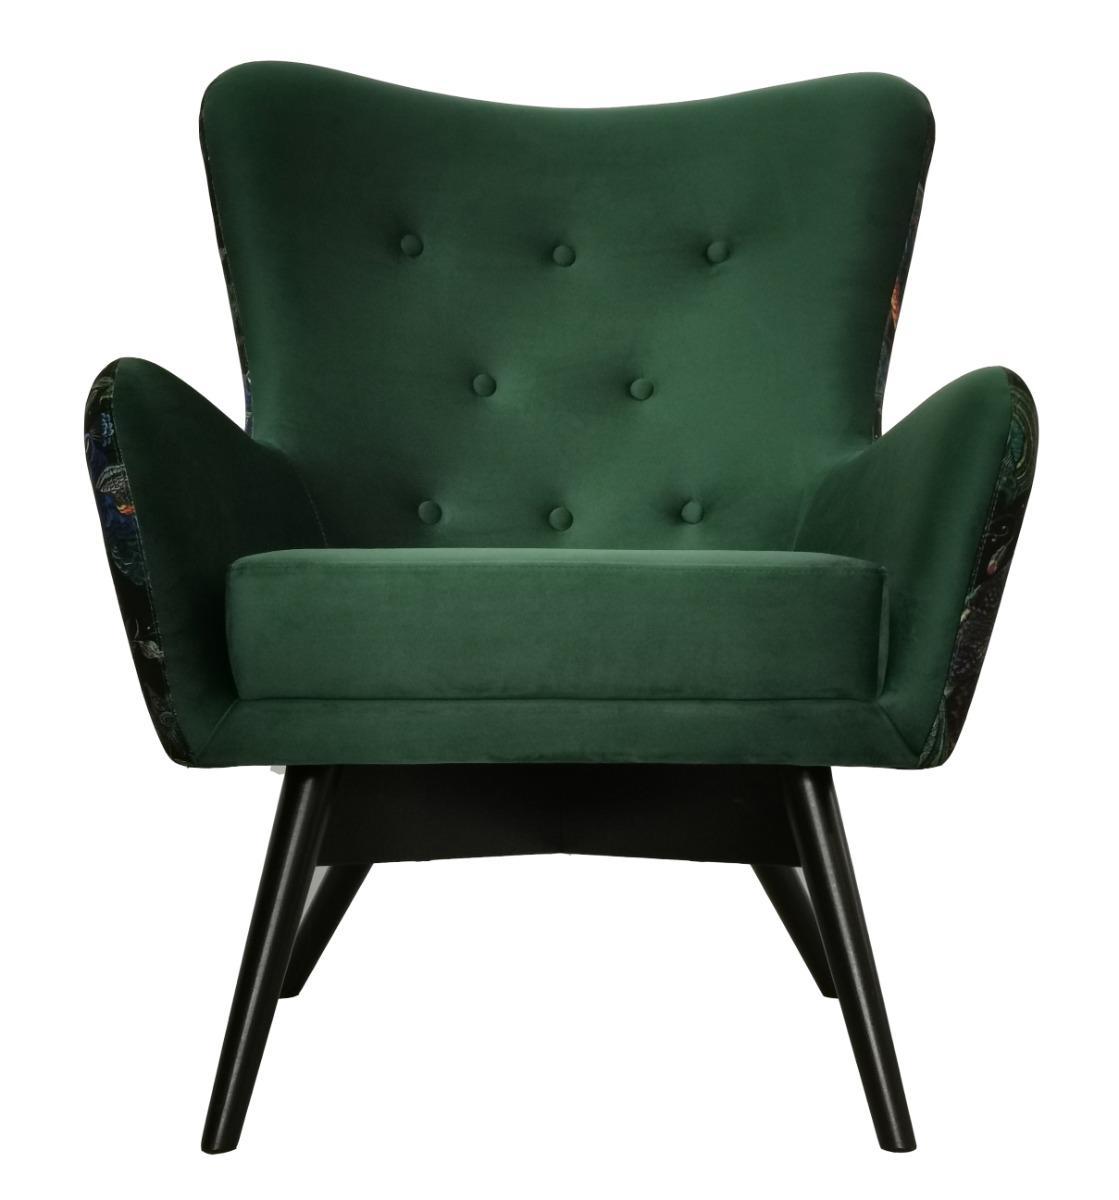 Fotel skandynawski GRANDE 80x93x80 cm zielony we wzory pawie do salonu 1 Full Screen